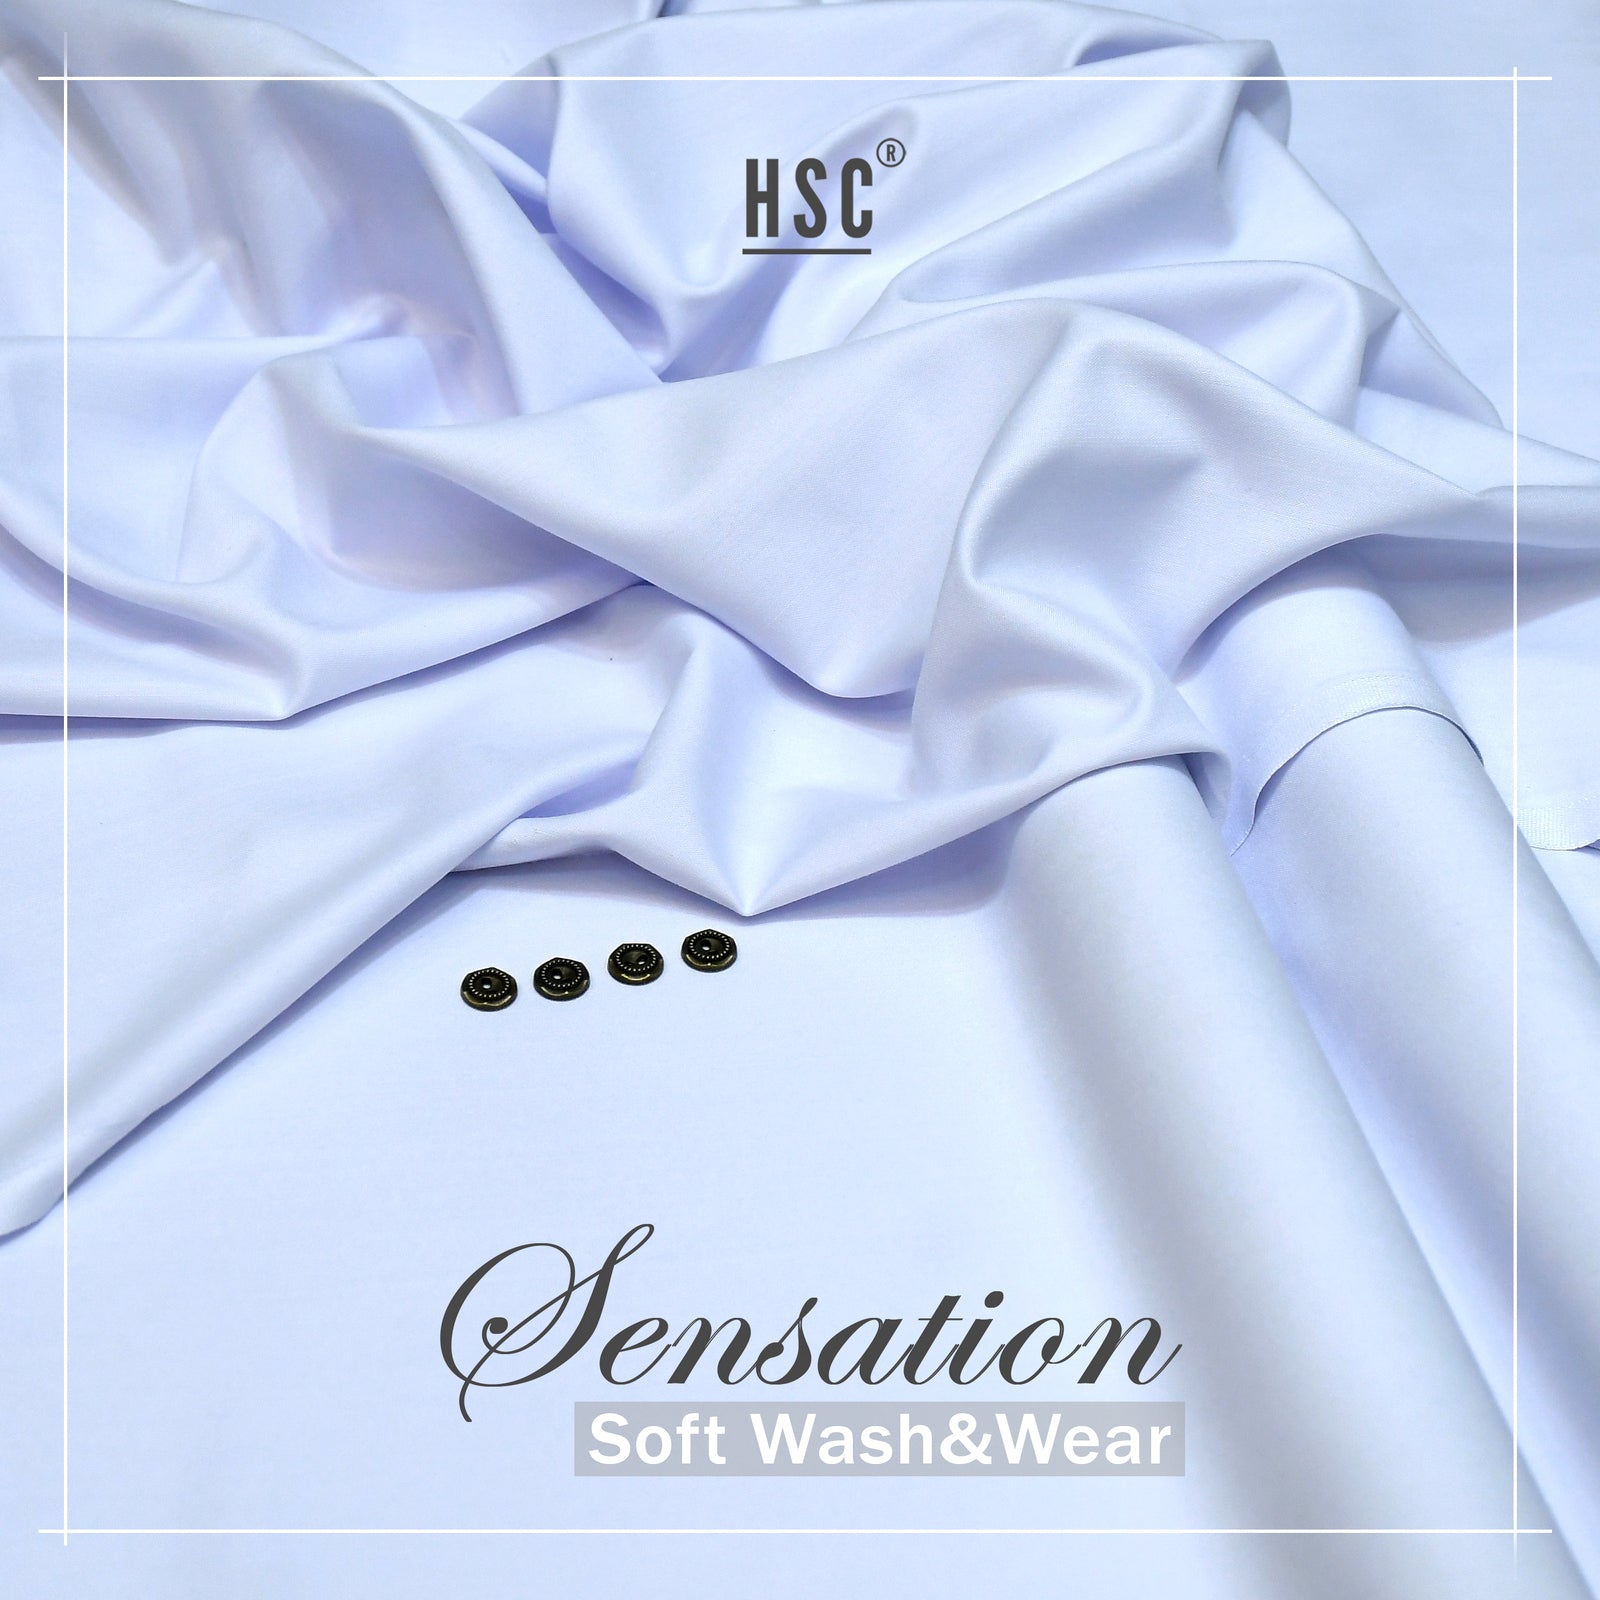 Buy 1 Get 1 Free Sensation Soft Wash&Wear - SSW7 HSC